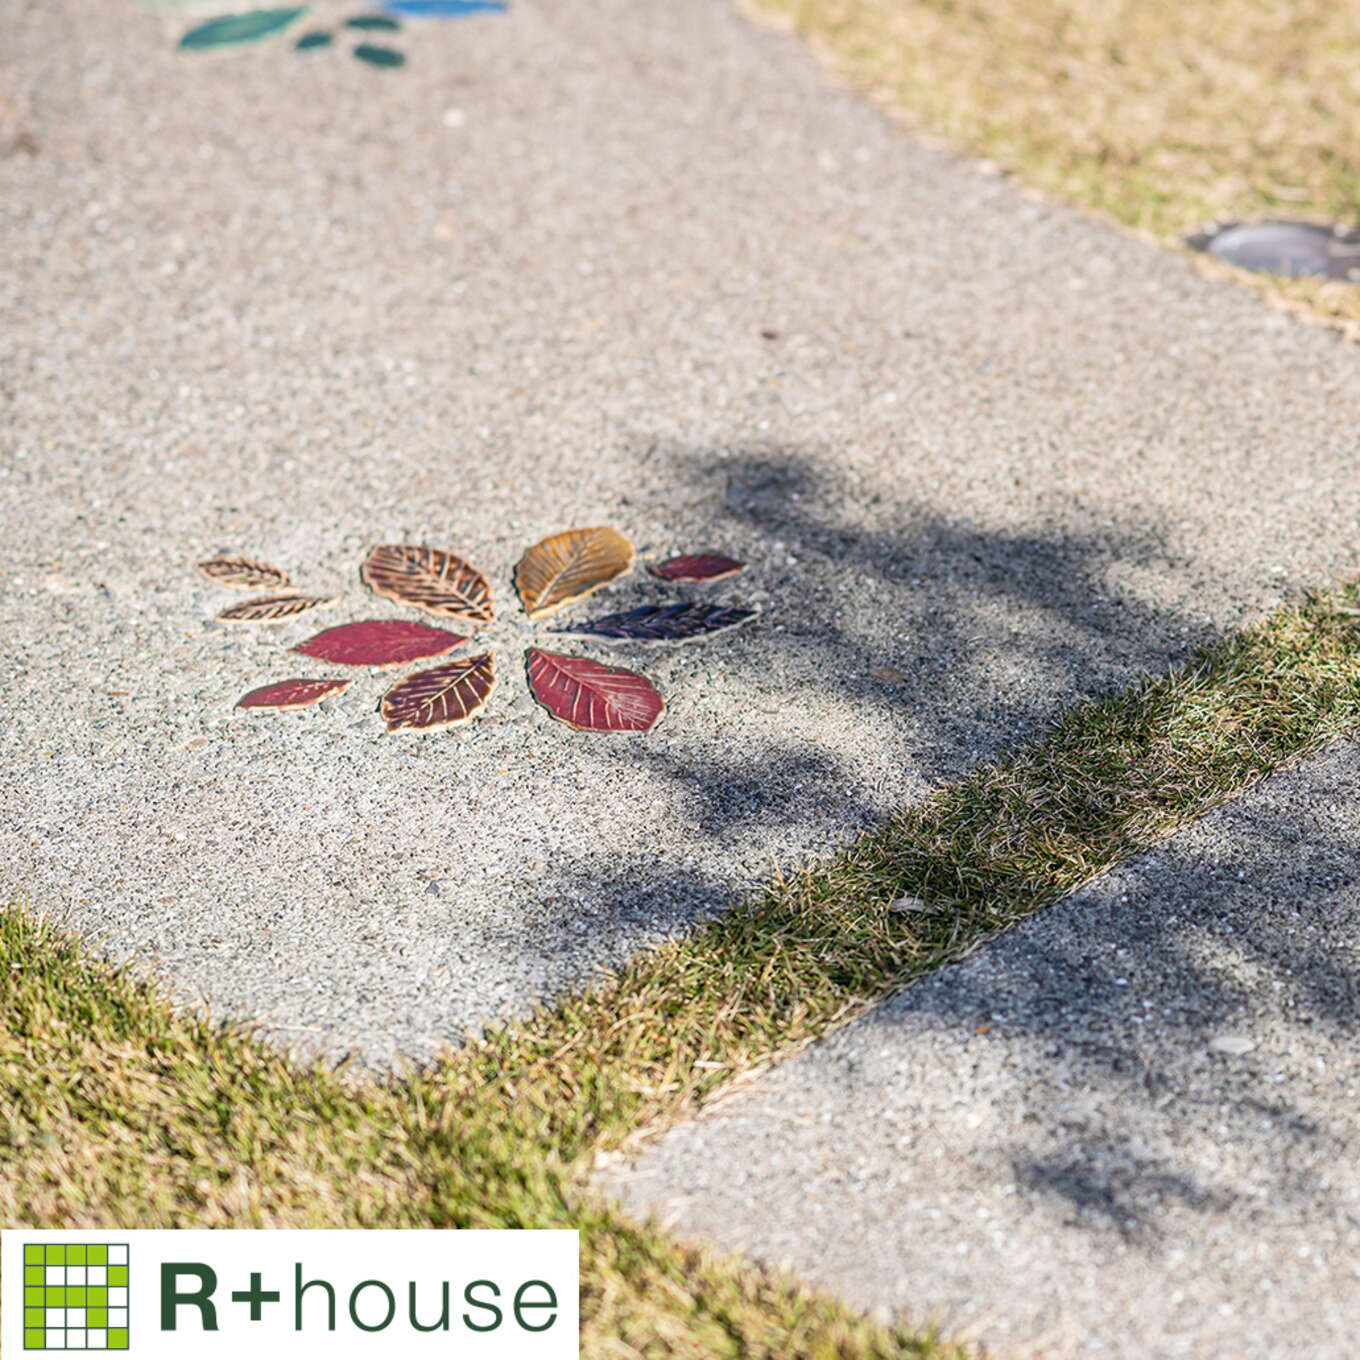 R+houseの物件の庭にある園路の写真です。洗い出し仕上げの園路に赤い葉っぱの形のタイルが花の形に埋め込まれている